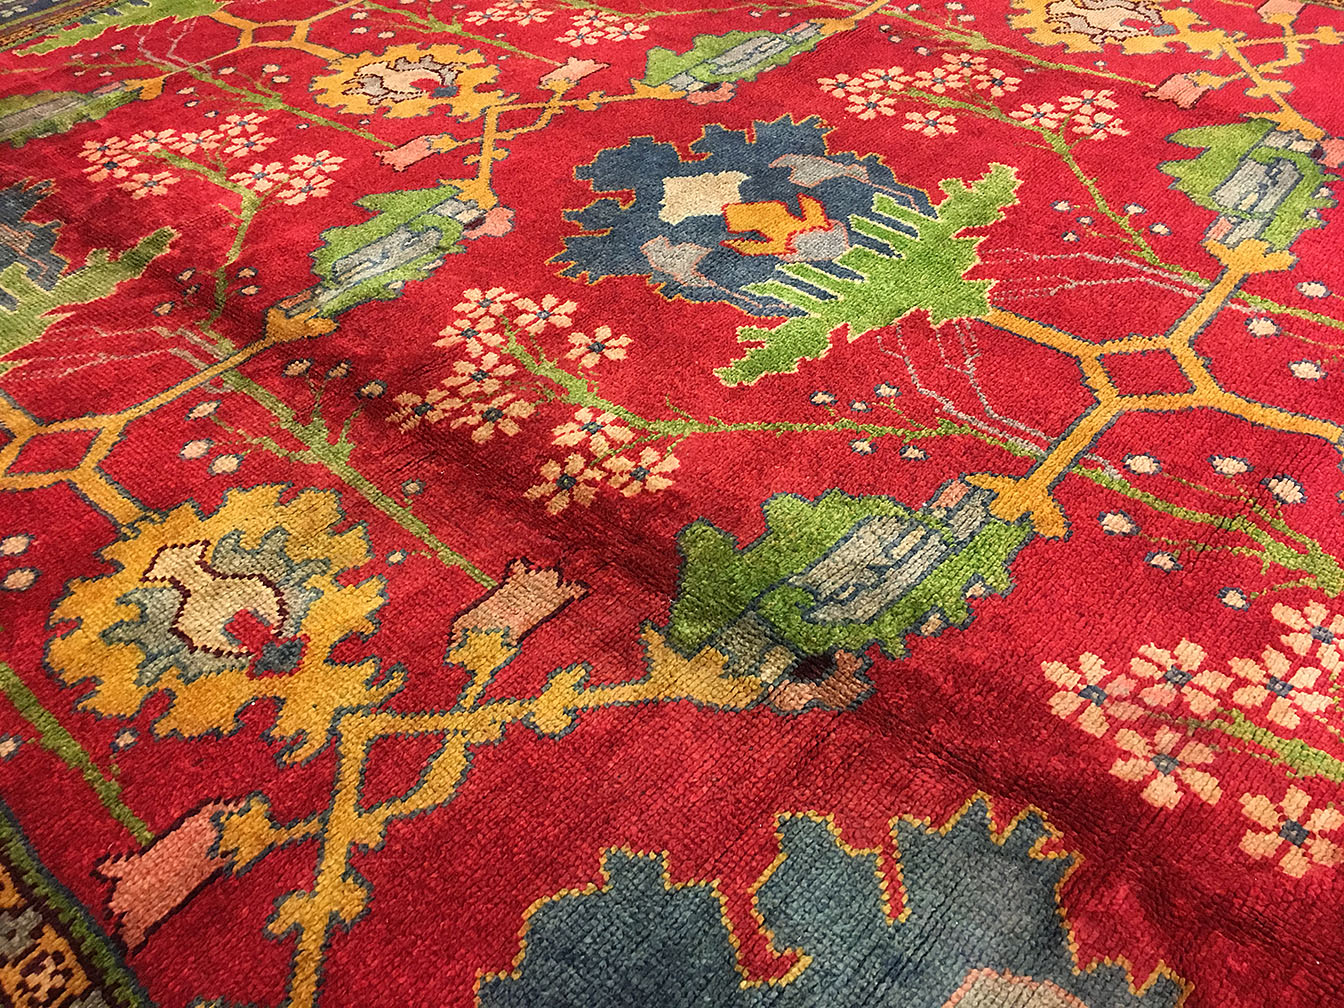 Antique donegal Carpet - # 1948